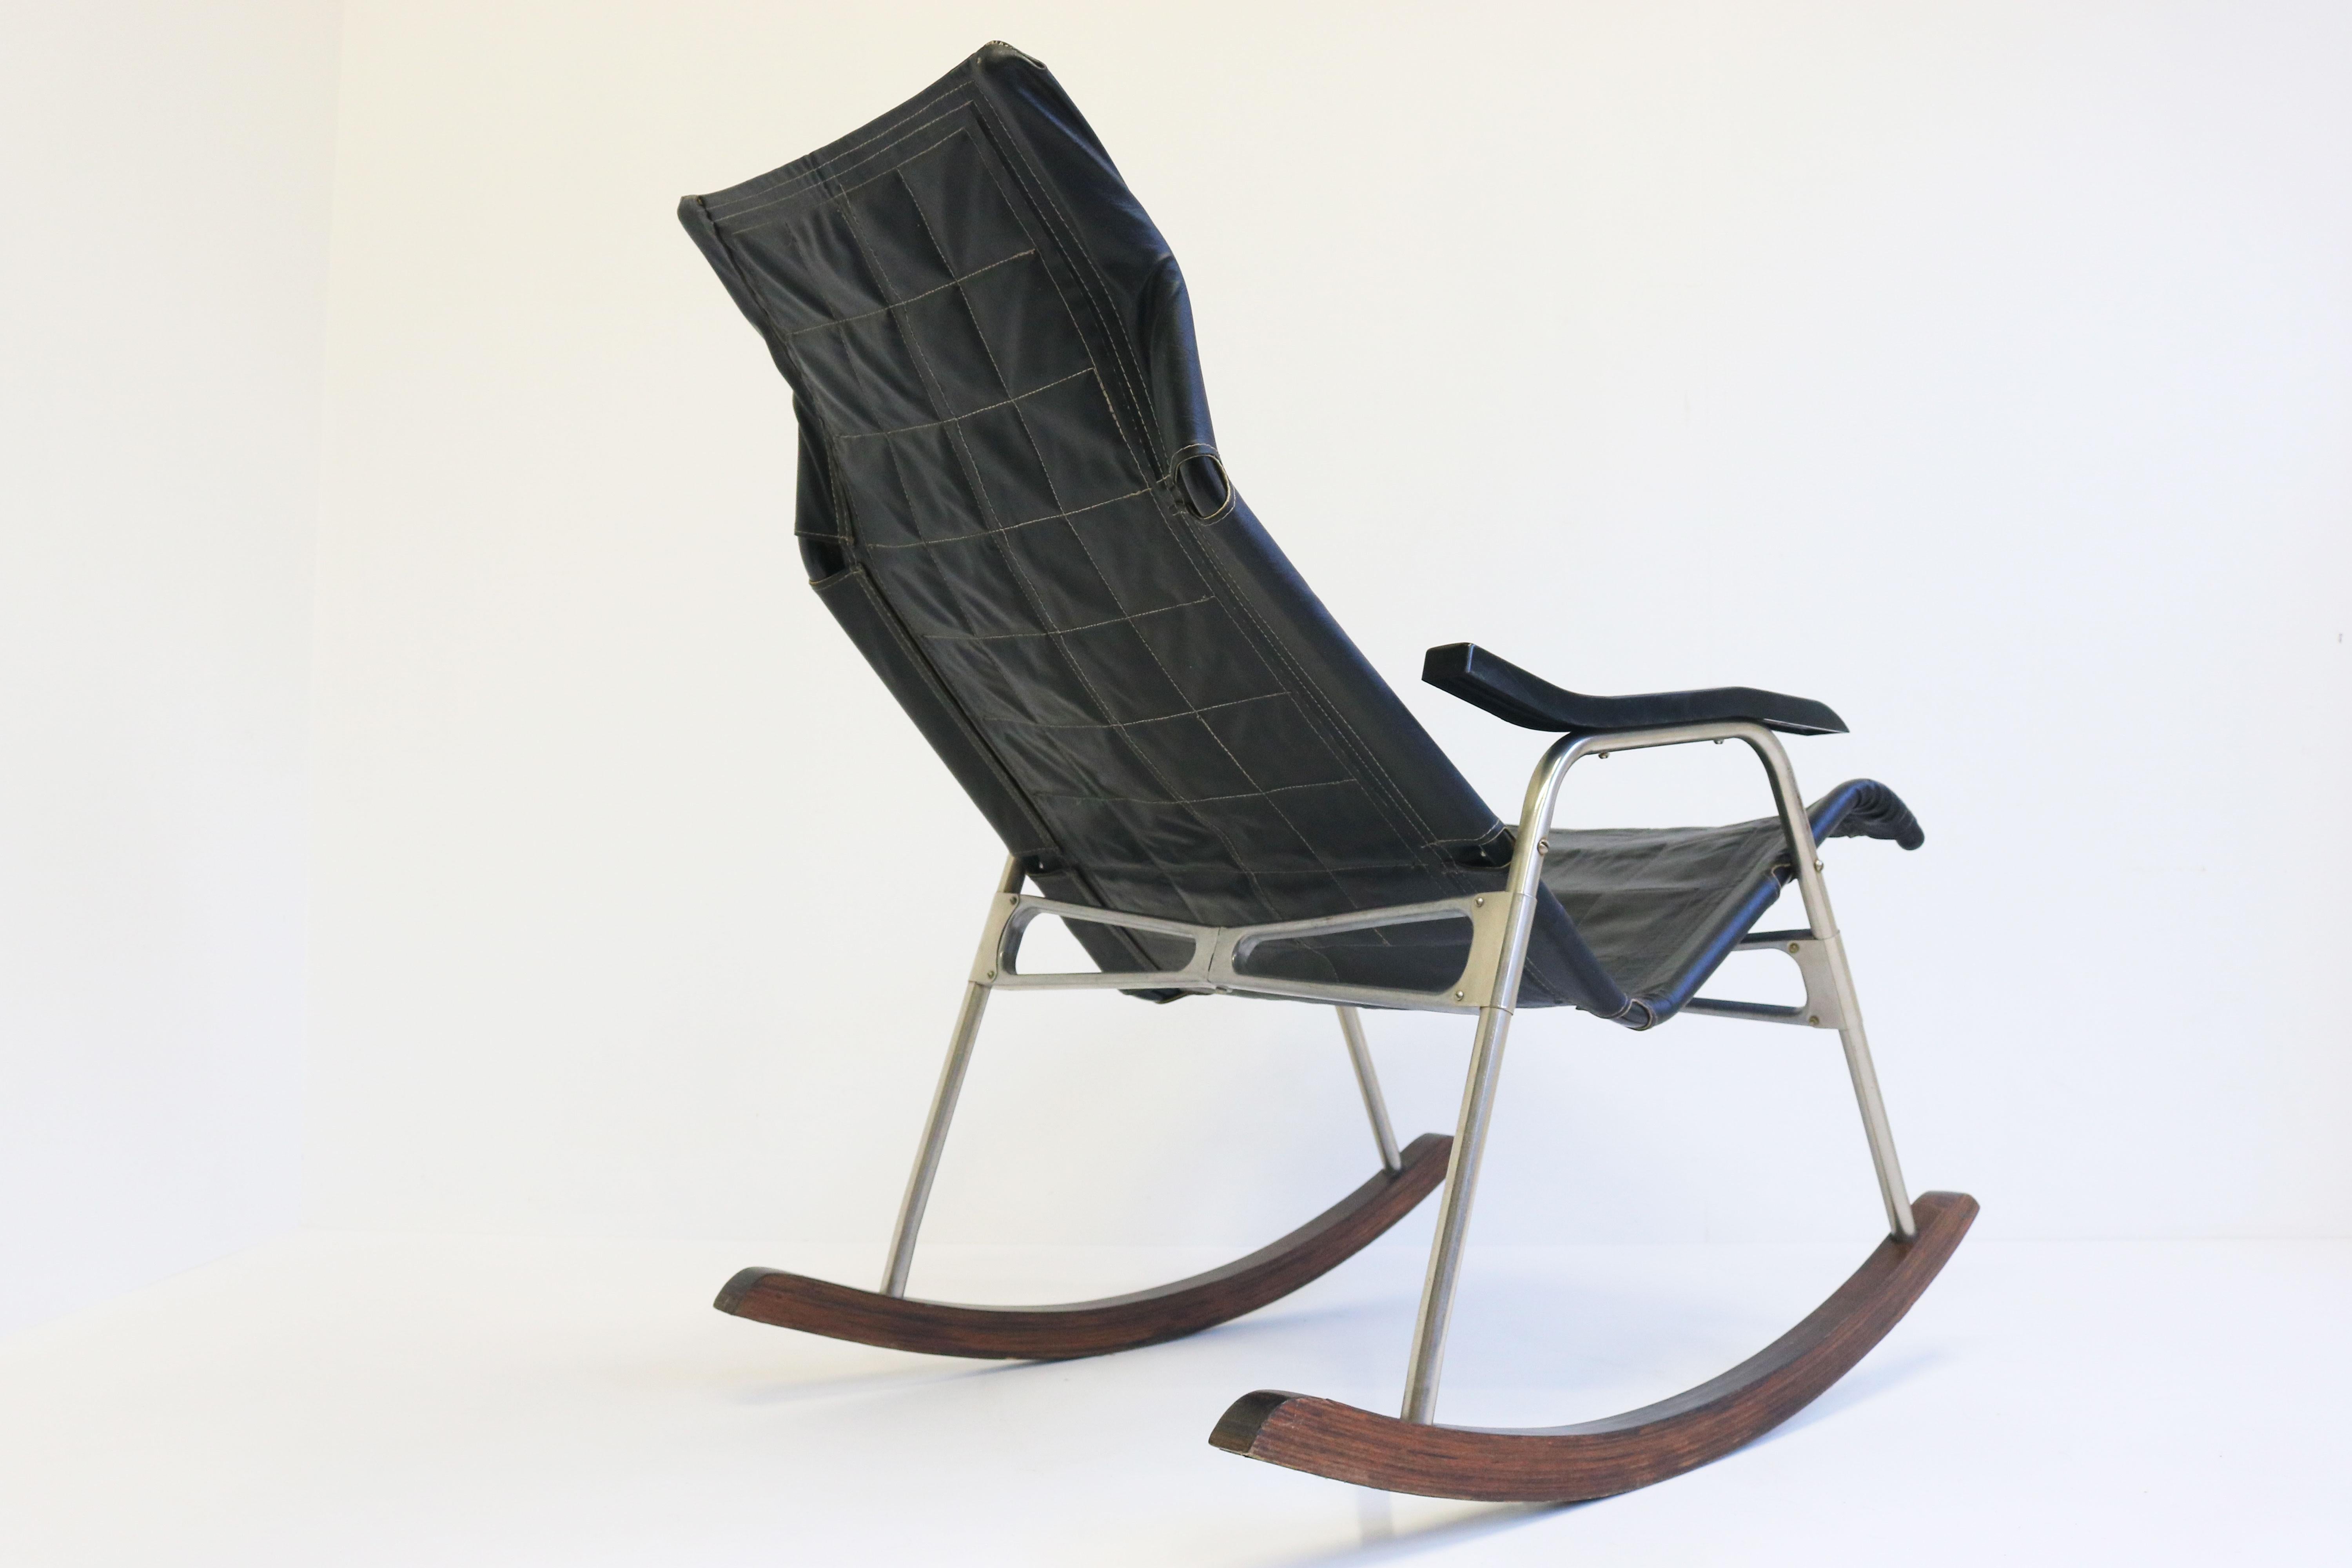 Wir stellen ein atemberaubendes und ikonisches Möbelstück aus der Mitte des Jahrhunderts vor: diesen schwarzen Lederschaukelstuhl von Takeshi Nii, der 1960 in Japan entworfen wurde.
Dieser schlanke und elegante Schaukelstuhl aus schwarzem Leder und